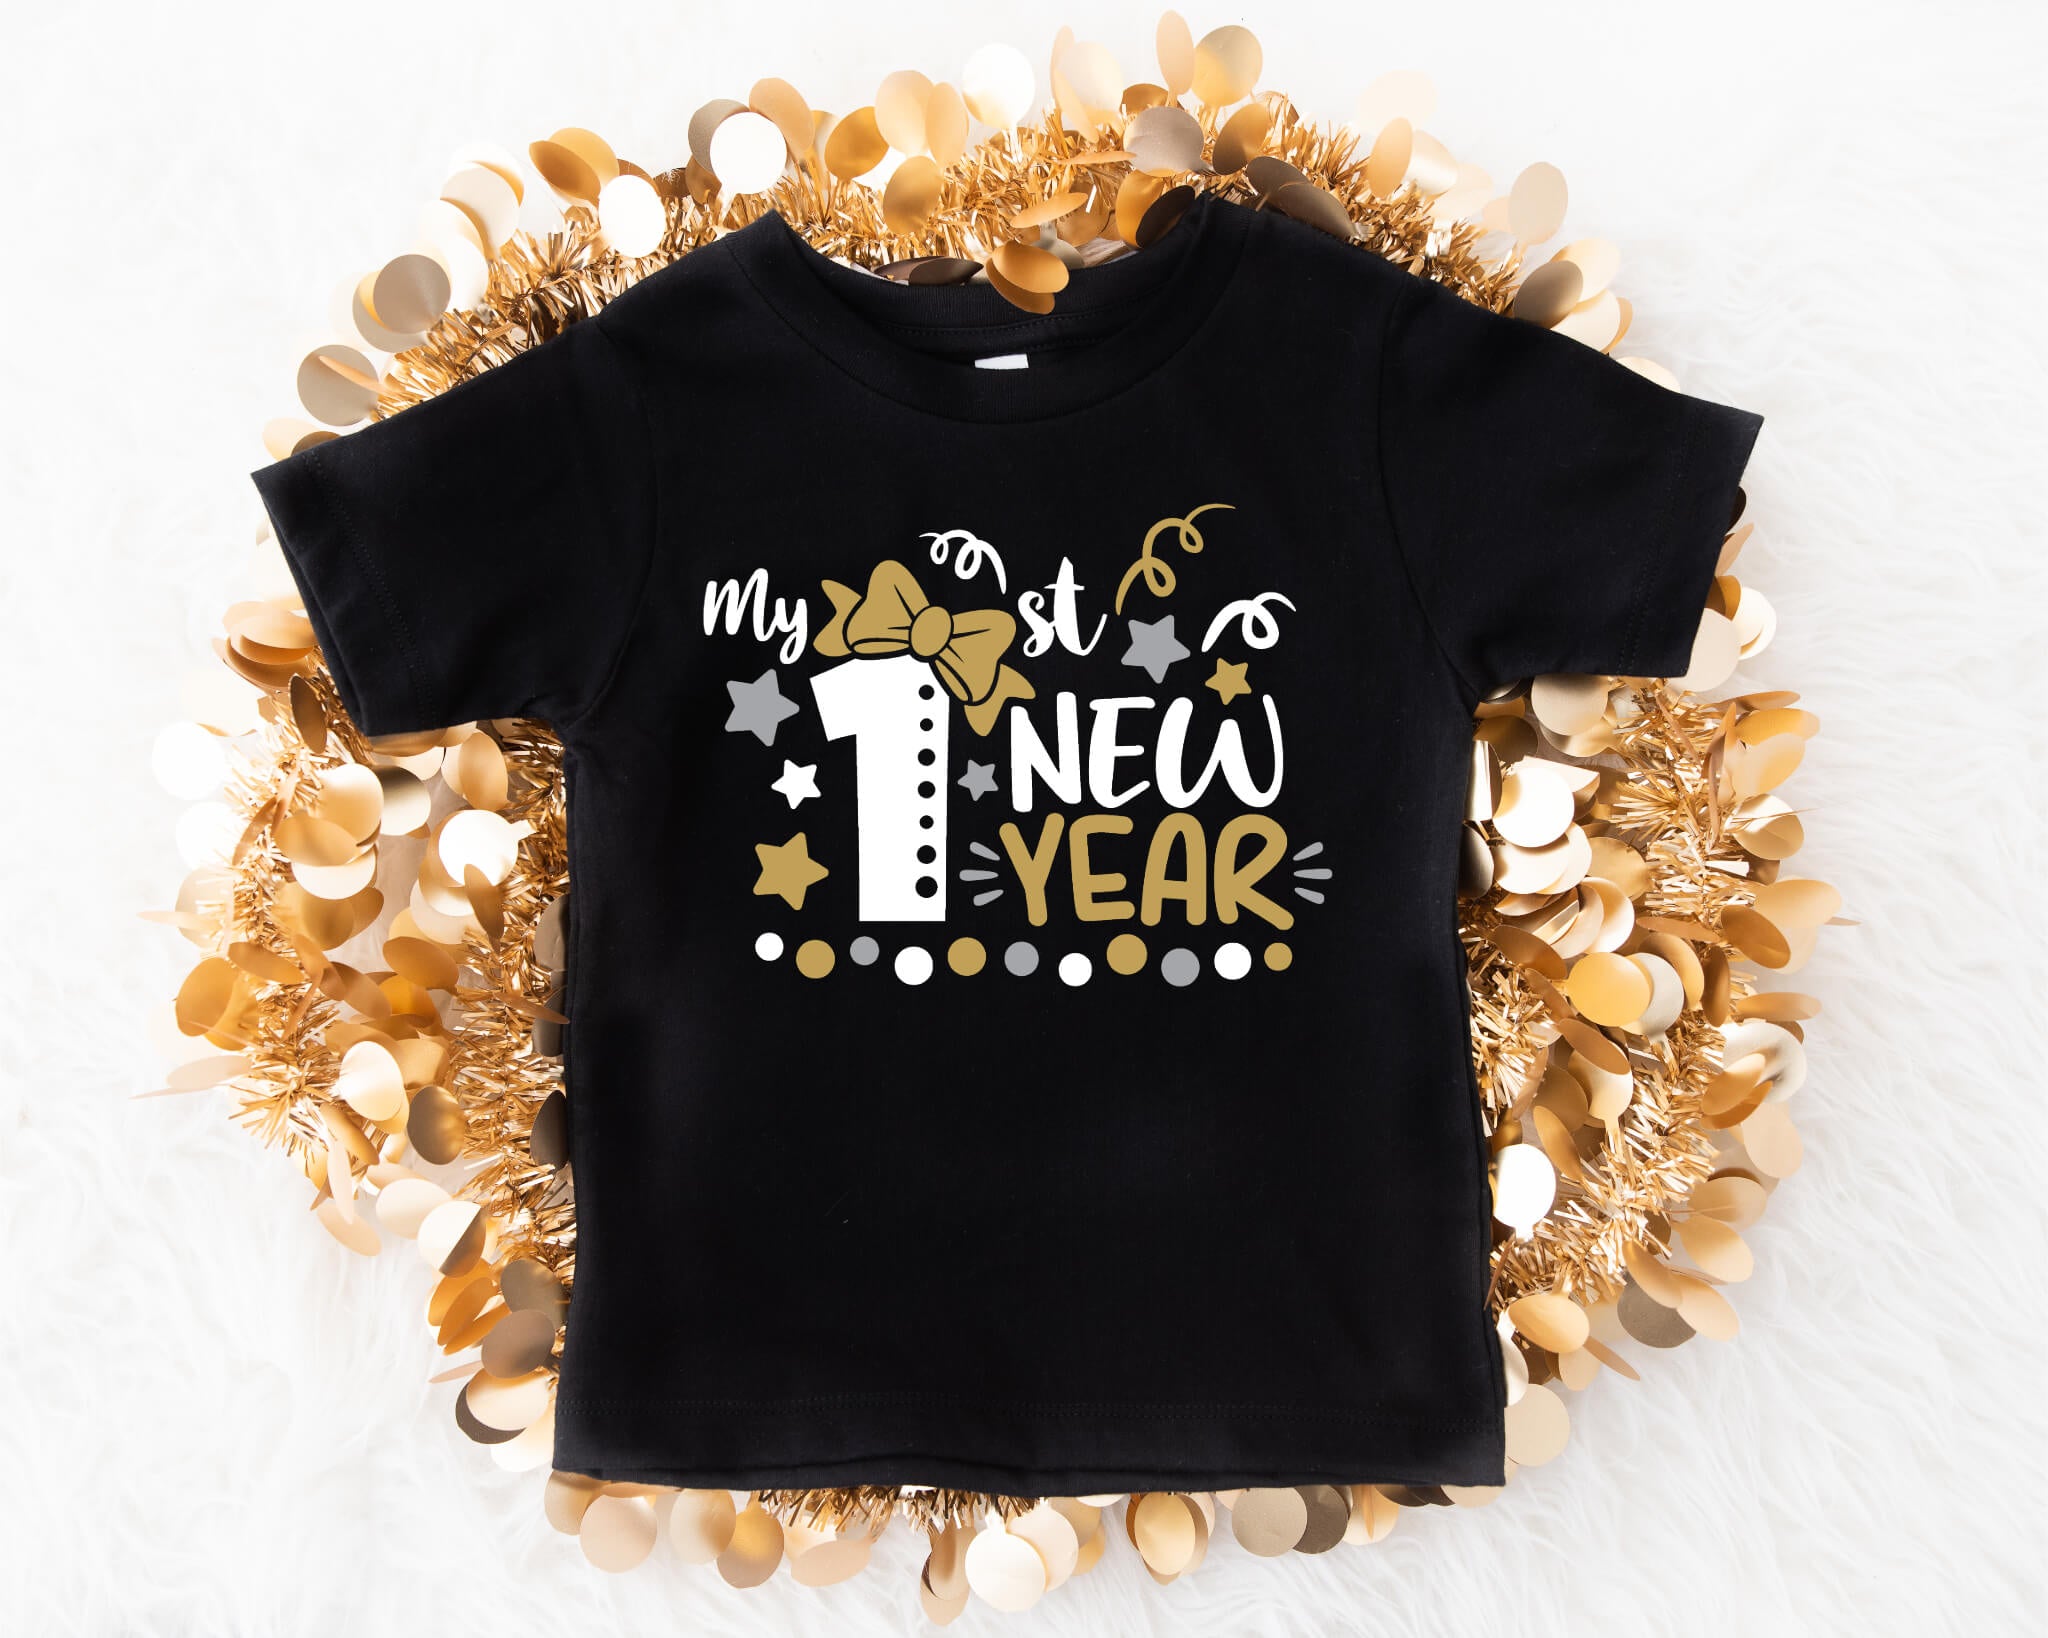 New Year's My 1st New Year Baby Girl Onesie Graphic Print T-Shirt